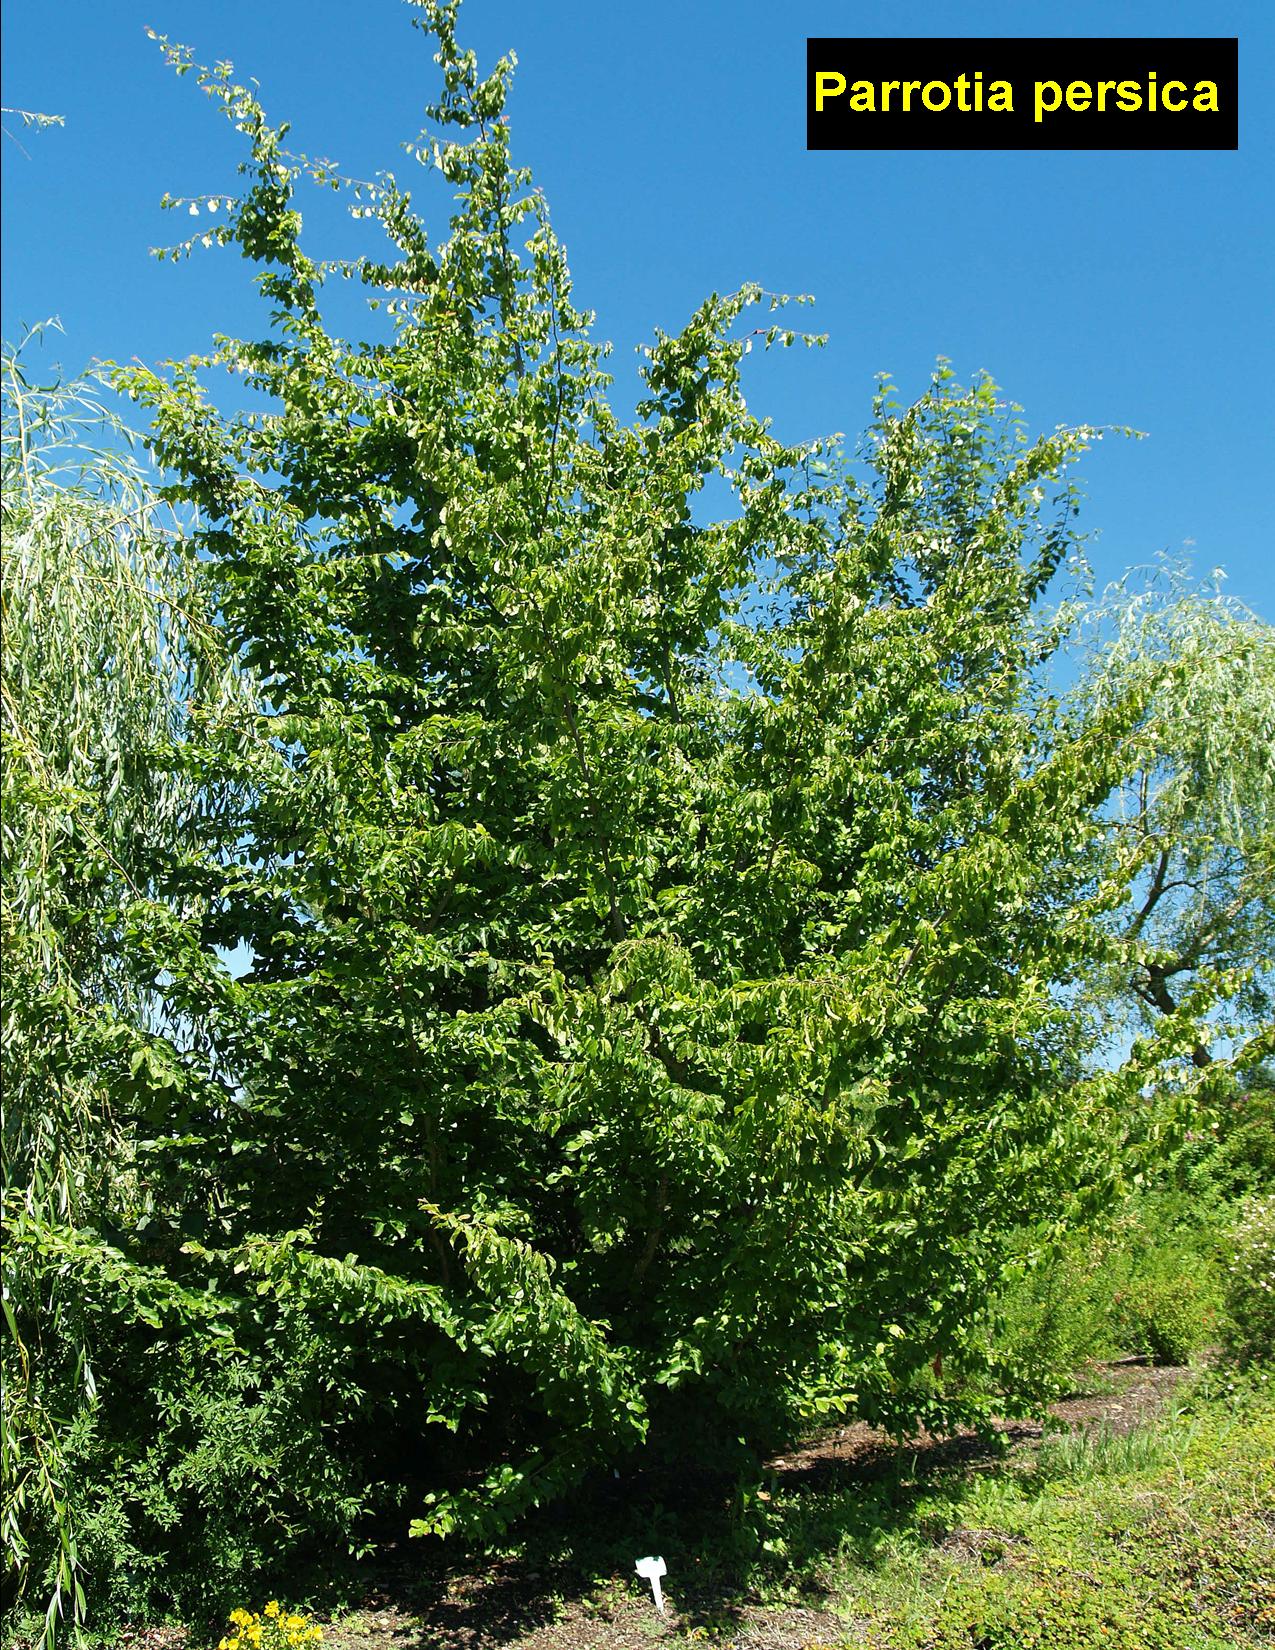 PARROTIA persica - Persian Parrotia